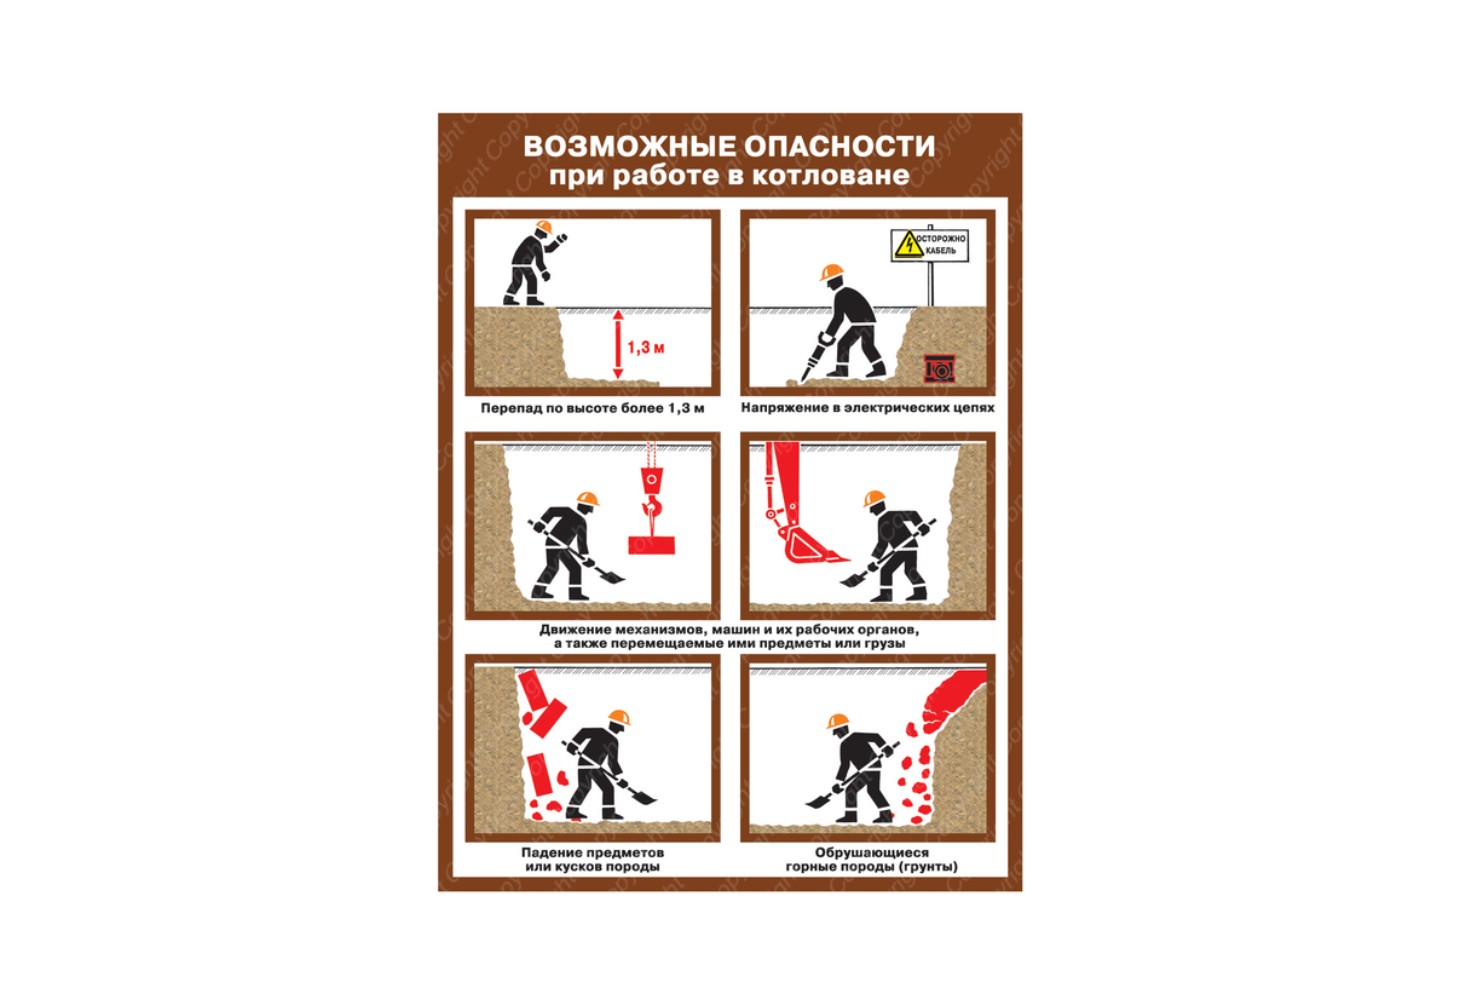 ГарантПожСервис - Плакат Возможные опасности при работе в котловане